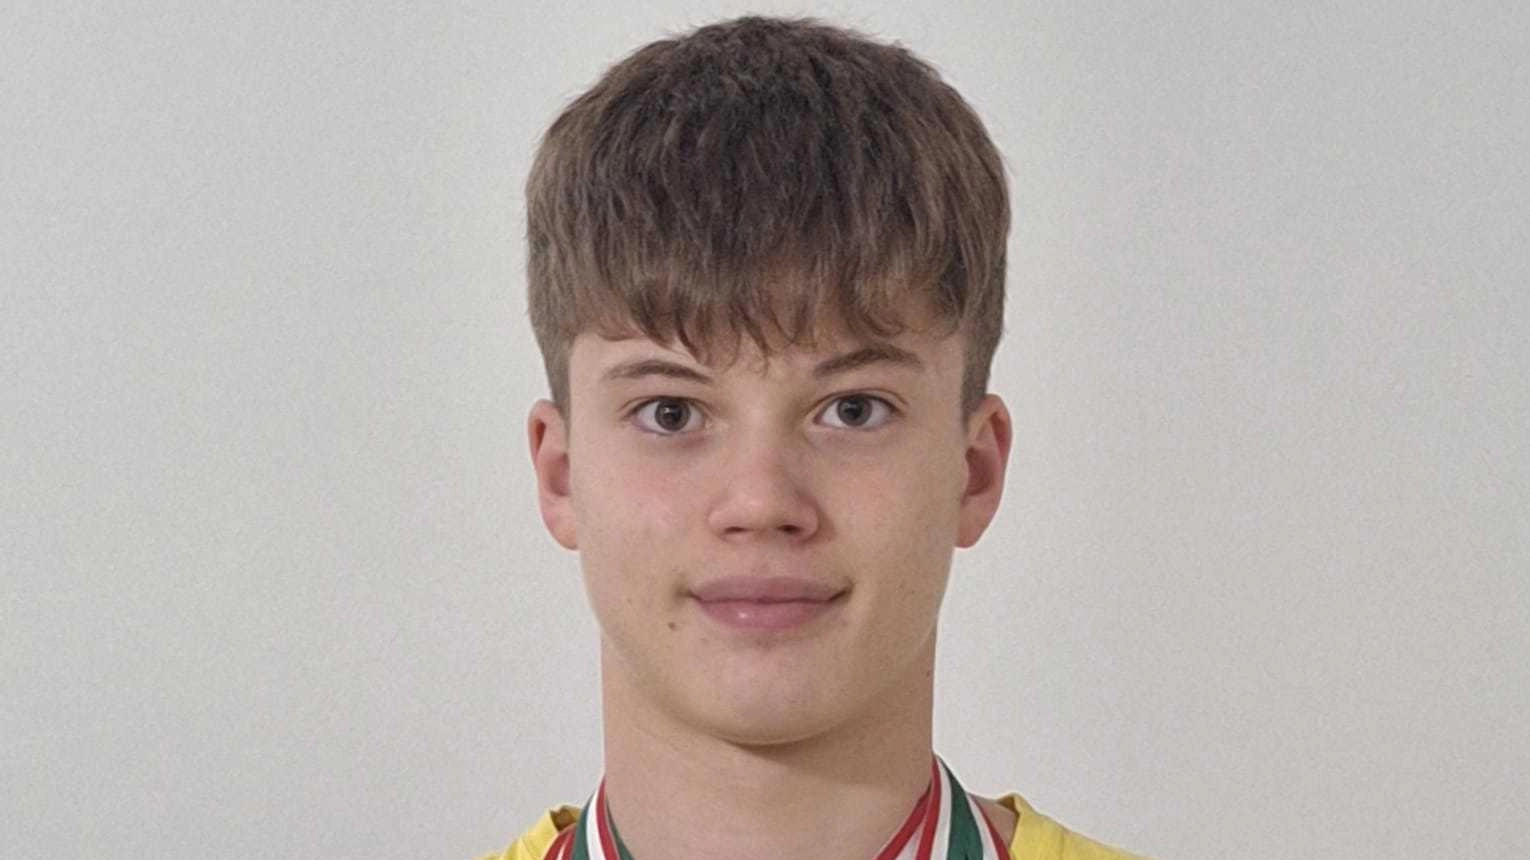 Busilacchi, 16 anni di Porto Potenza tesserato con Nandi Ars, ha vinto sei medaglie ai campionati italiani giovanili a Riccione. Il suo allenatore: "Grandi qualità".